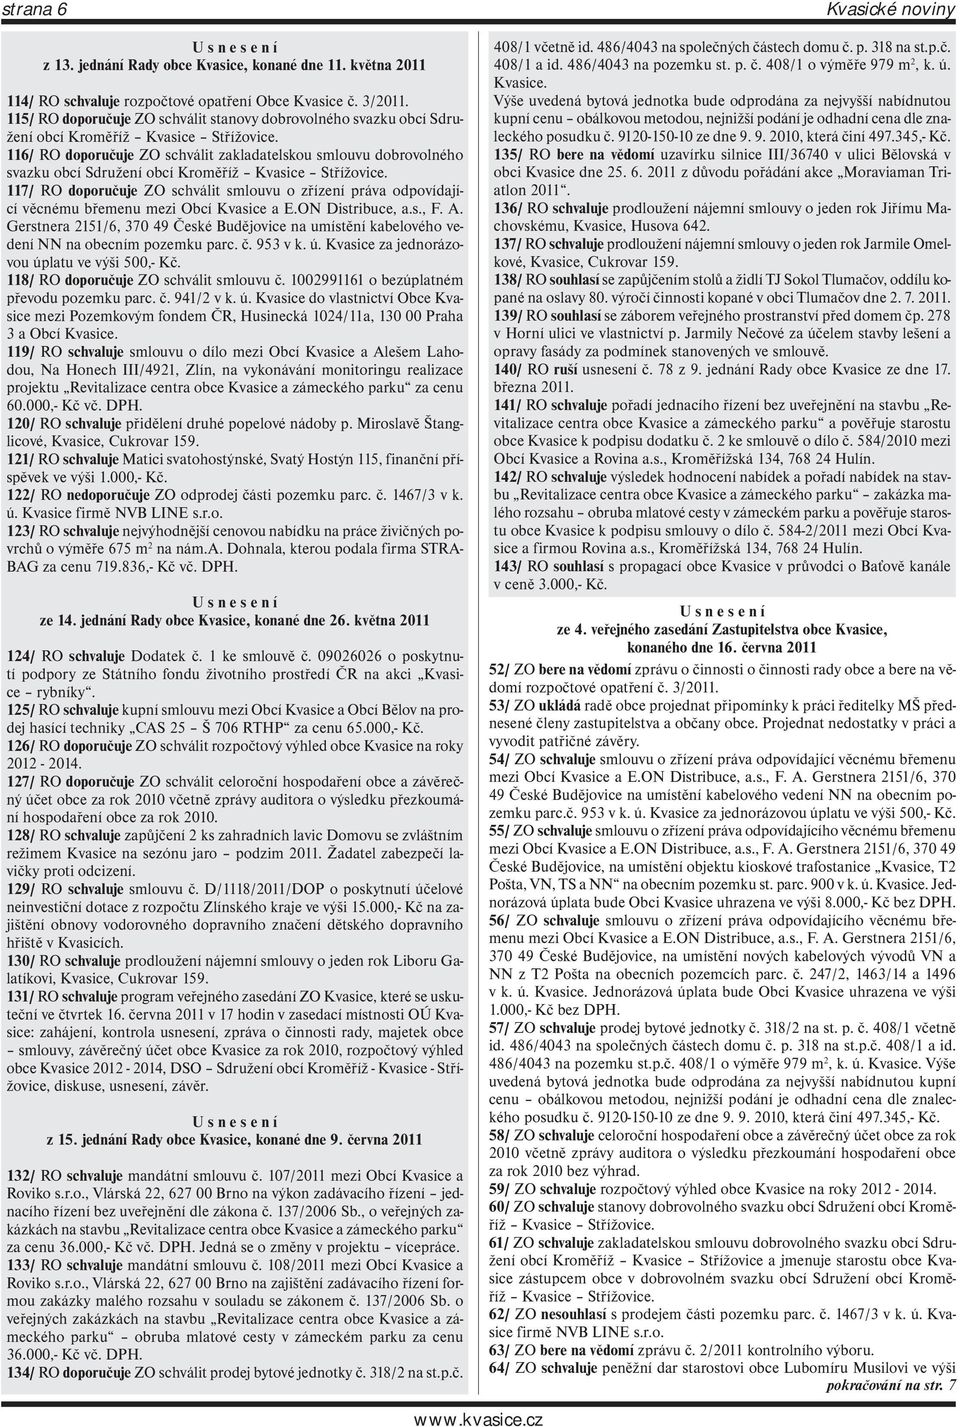 116/ RO doporučuje ZO schválit zakladatelskou smlouvu dobrovolného svazku obcí Sdružení obcí Kroměříž Kvasice Střížovice.